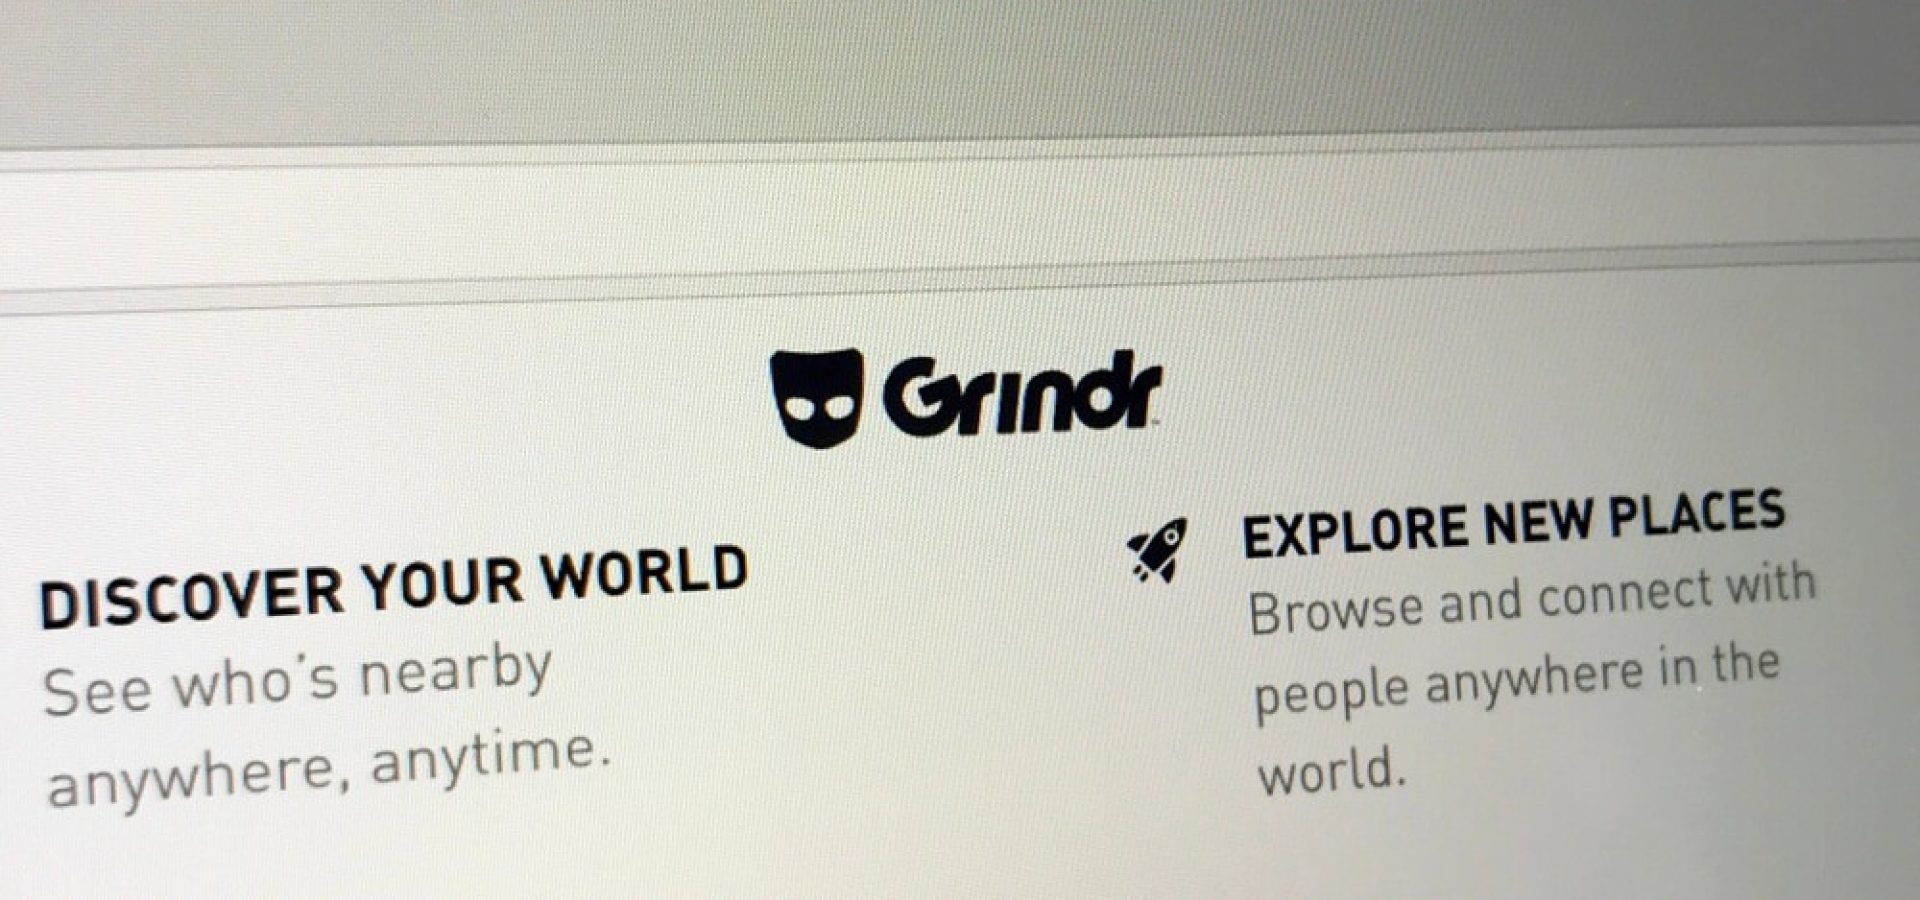 Website of Grindr.